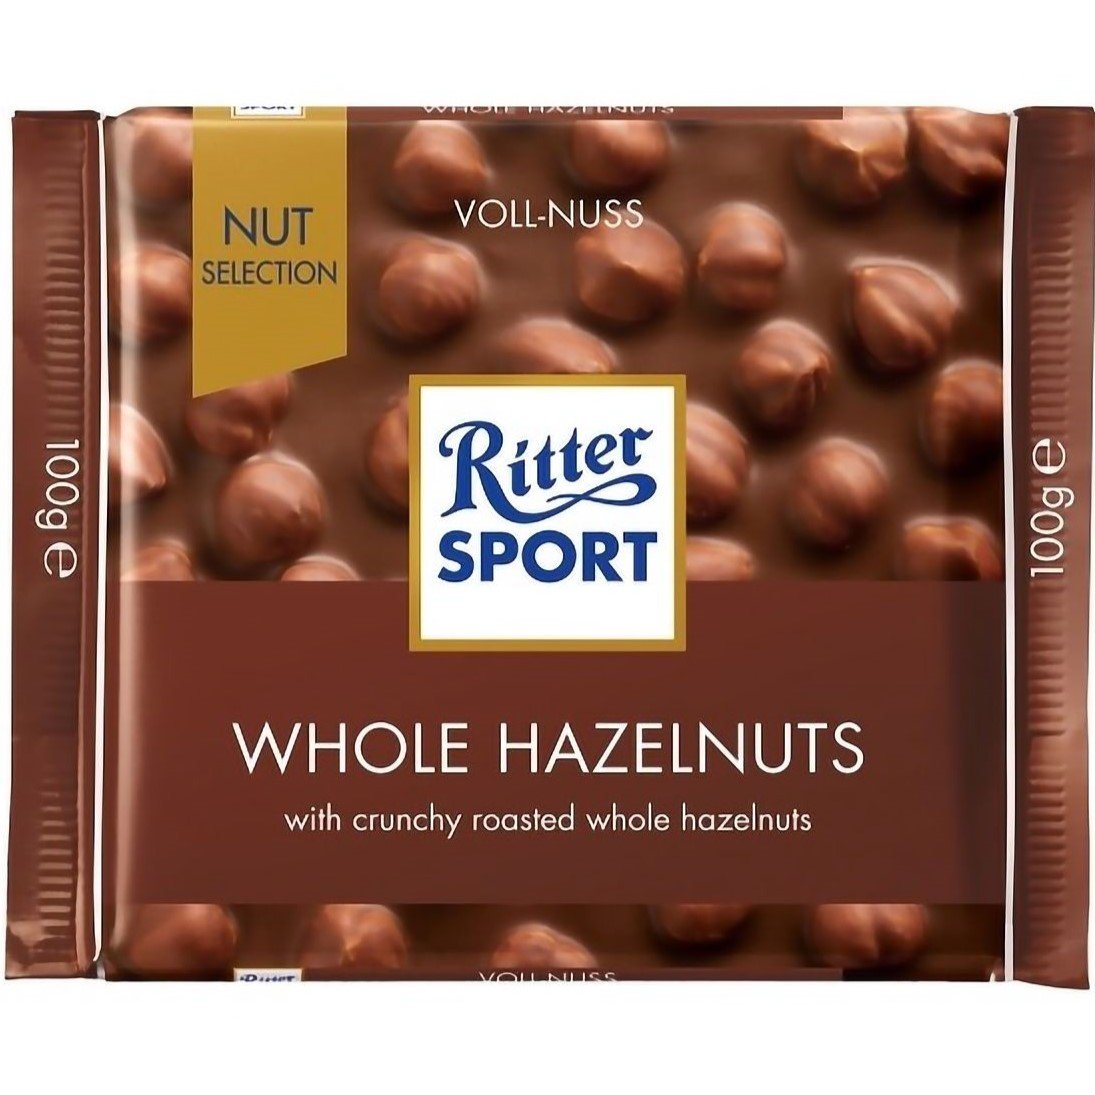 Шоколад Ritter Sport Nut Selection молочный с цельными лесными орехами 100 г (686644) - фото 1